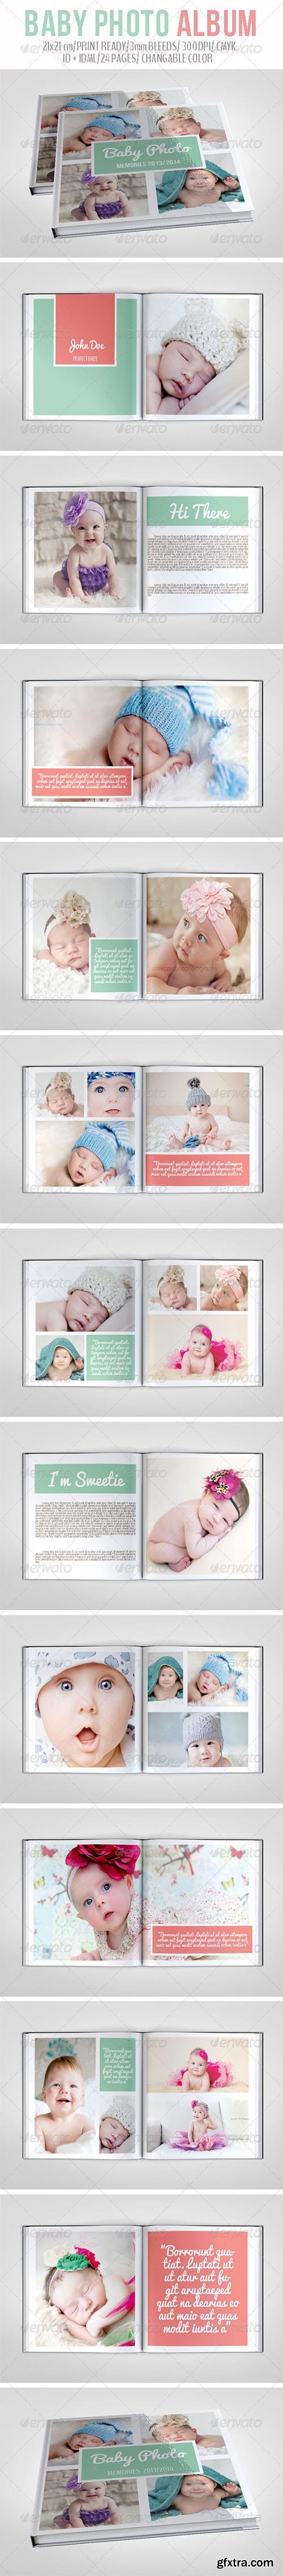 GraphicRiver - Baby Photo Album 6964950